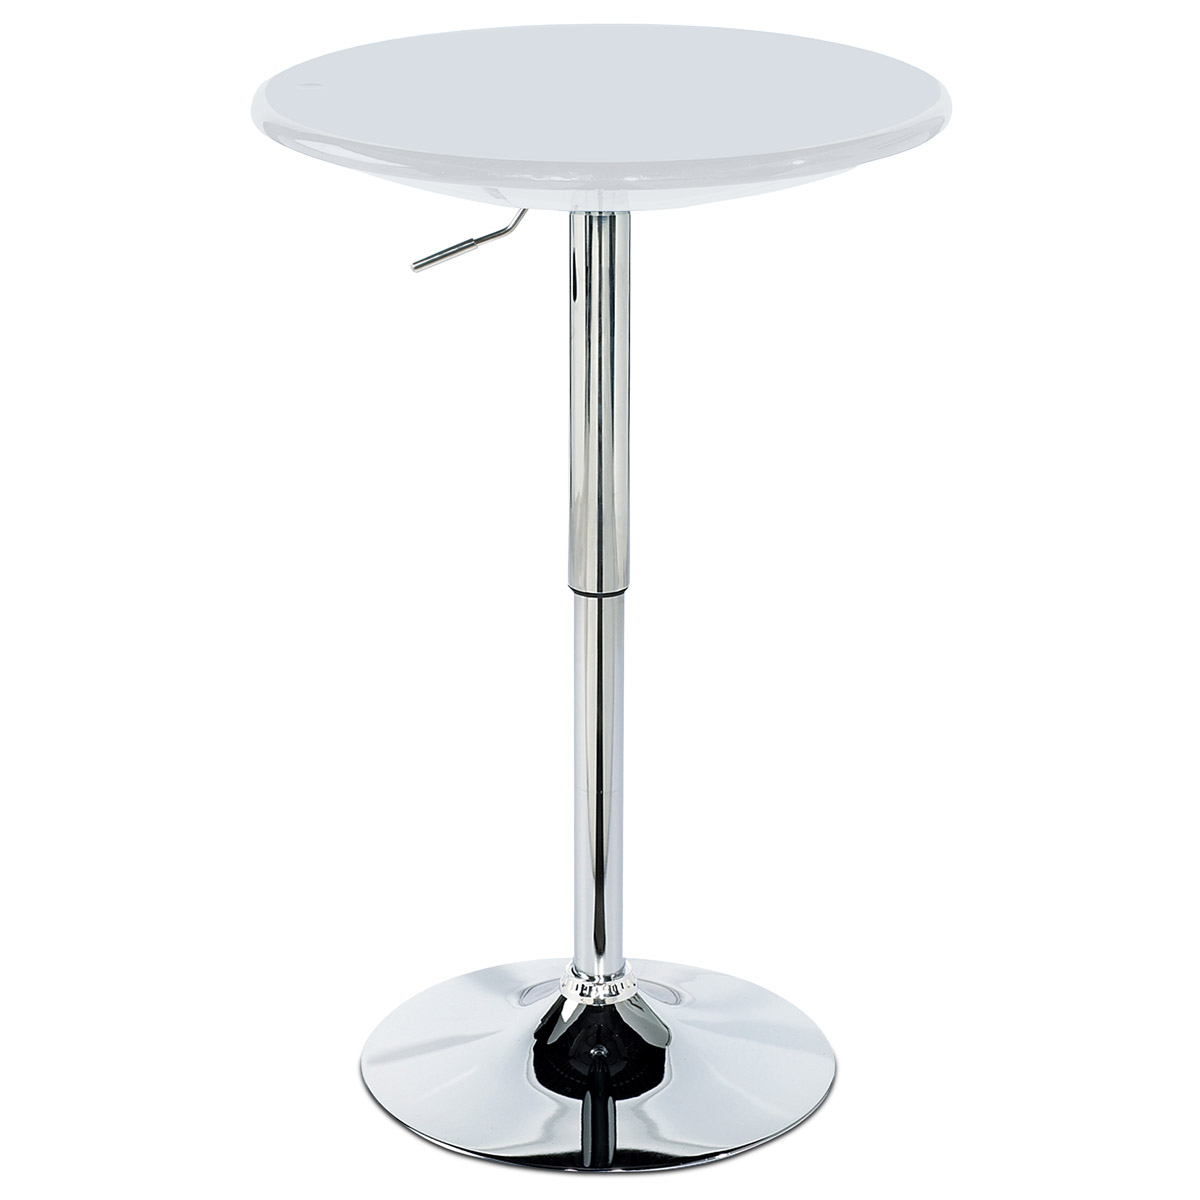 Barový stůl, bílý plast, chromová výškově nastavitelná podnož